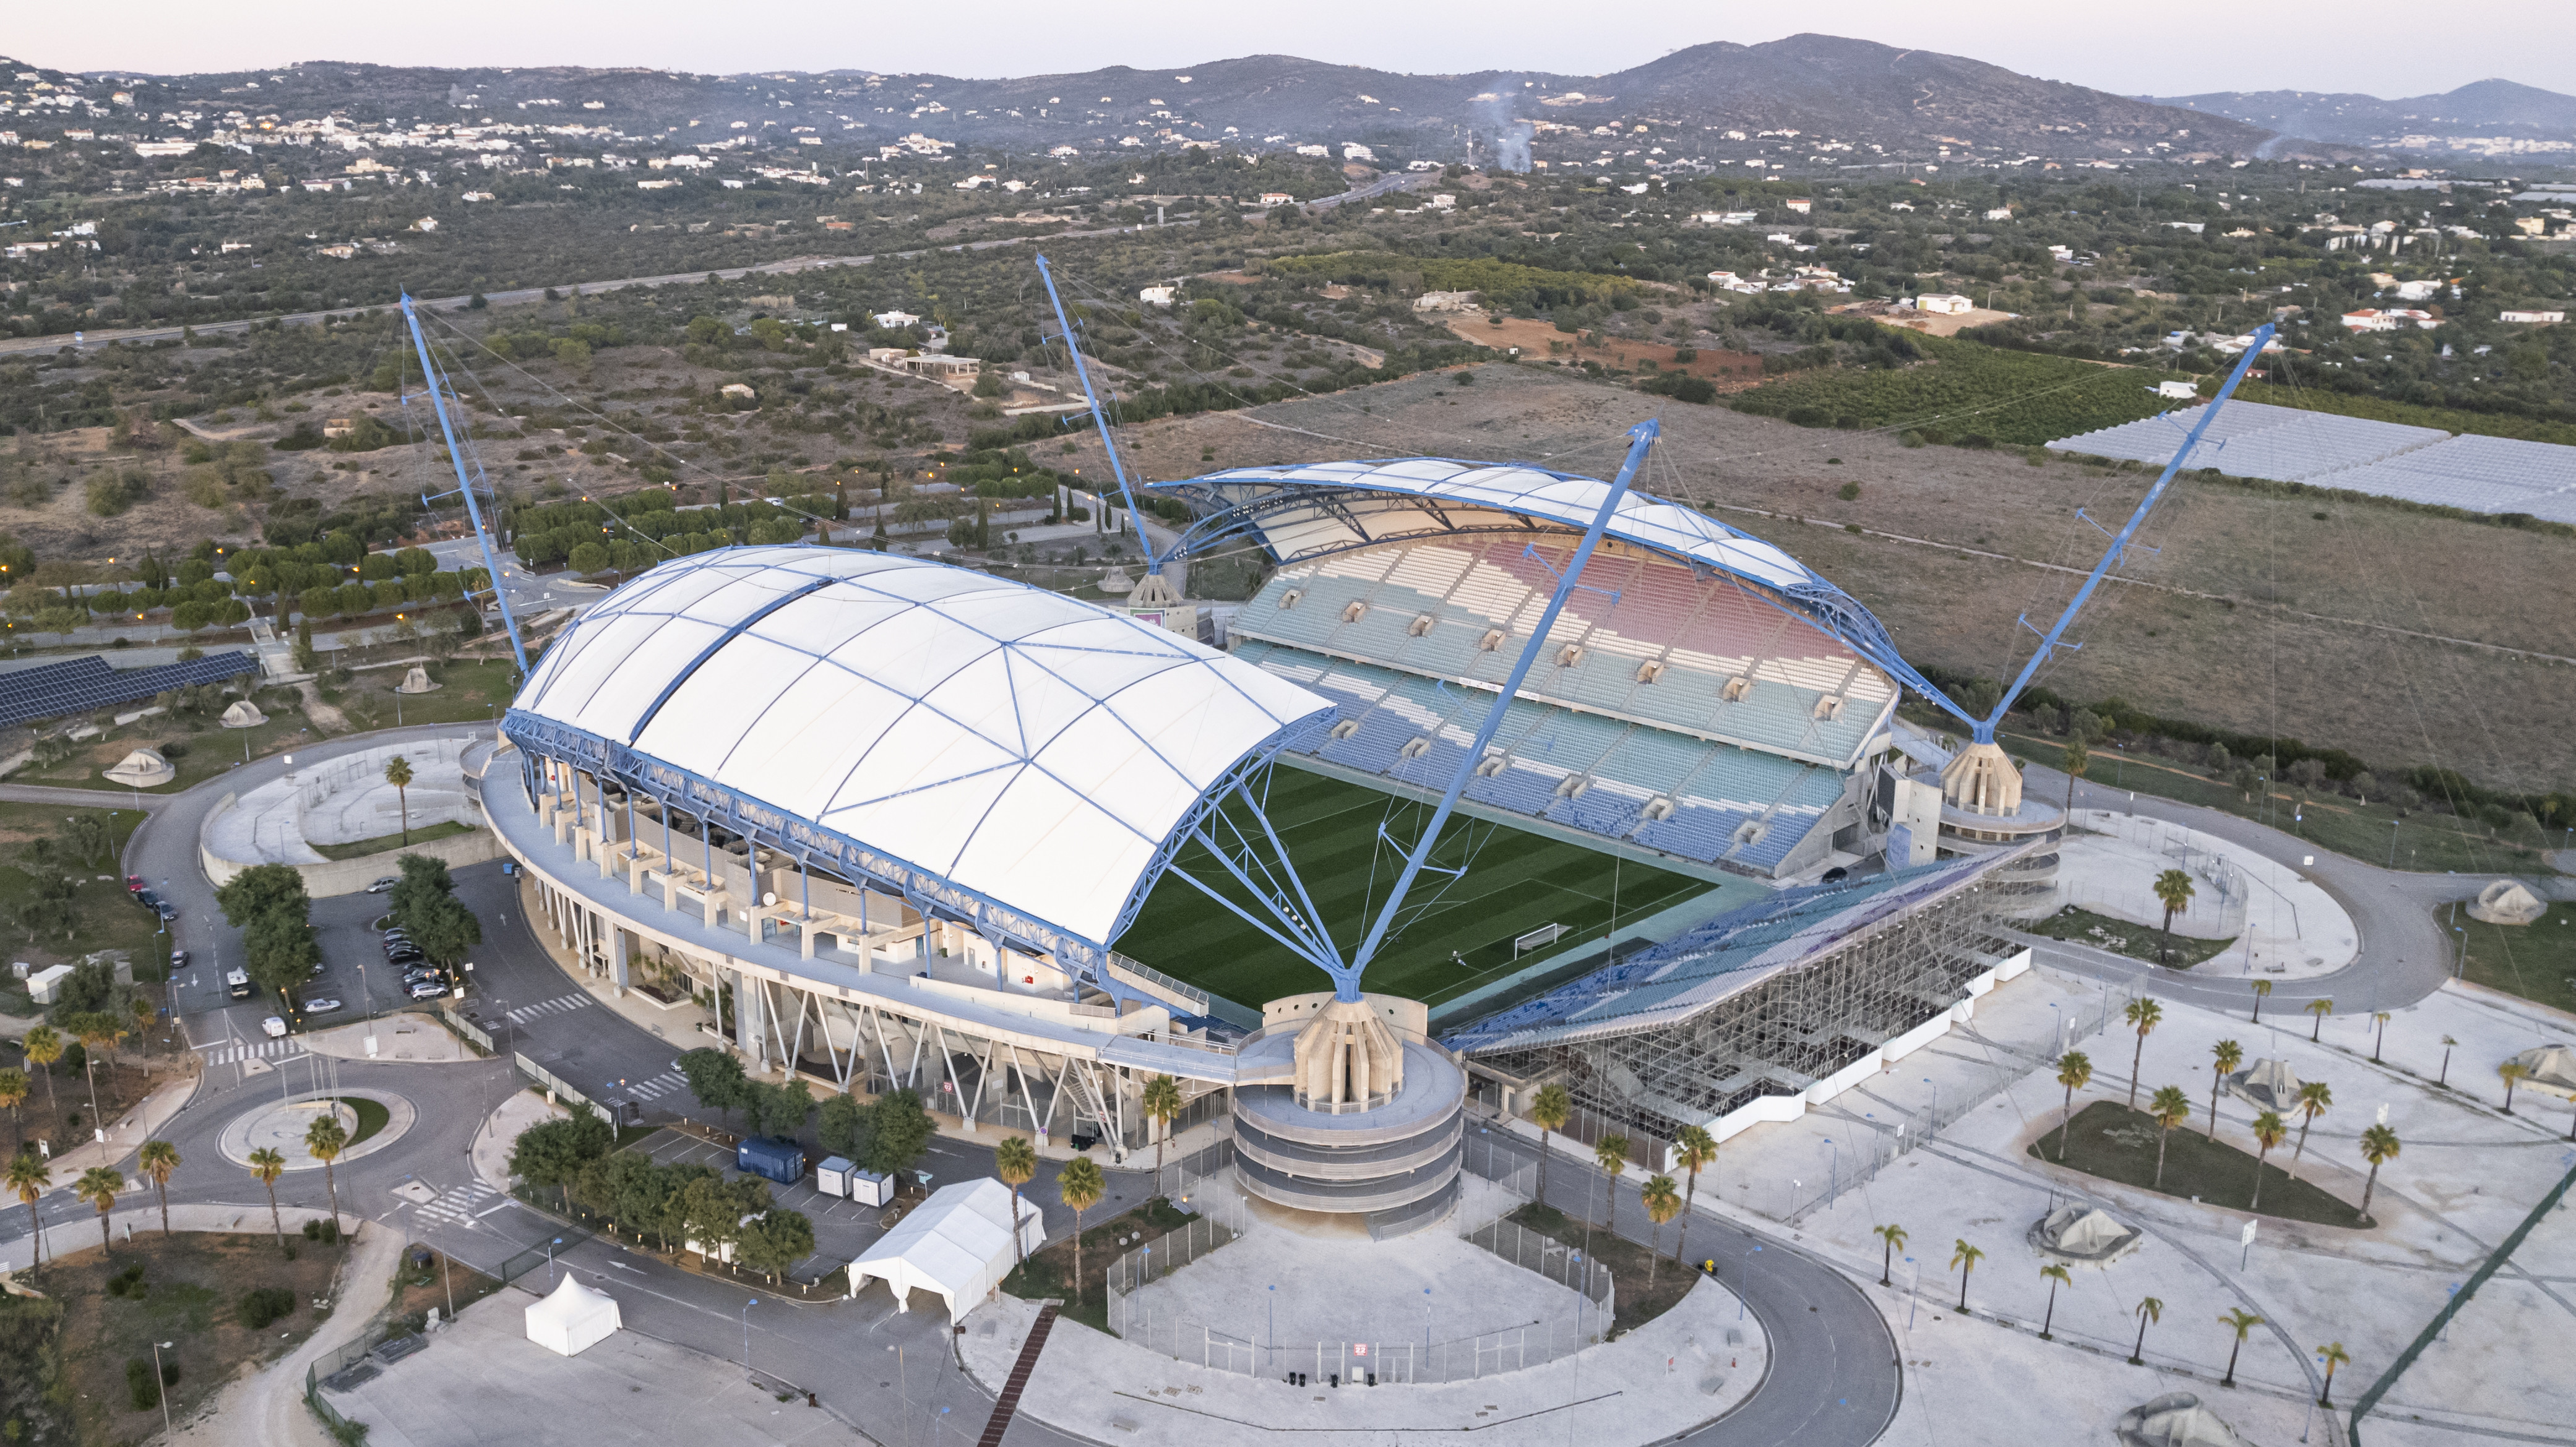 Algarve Stadium